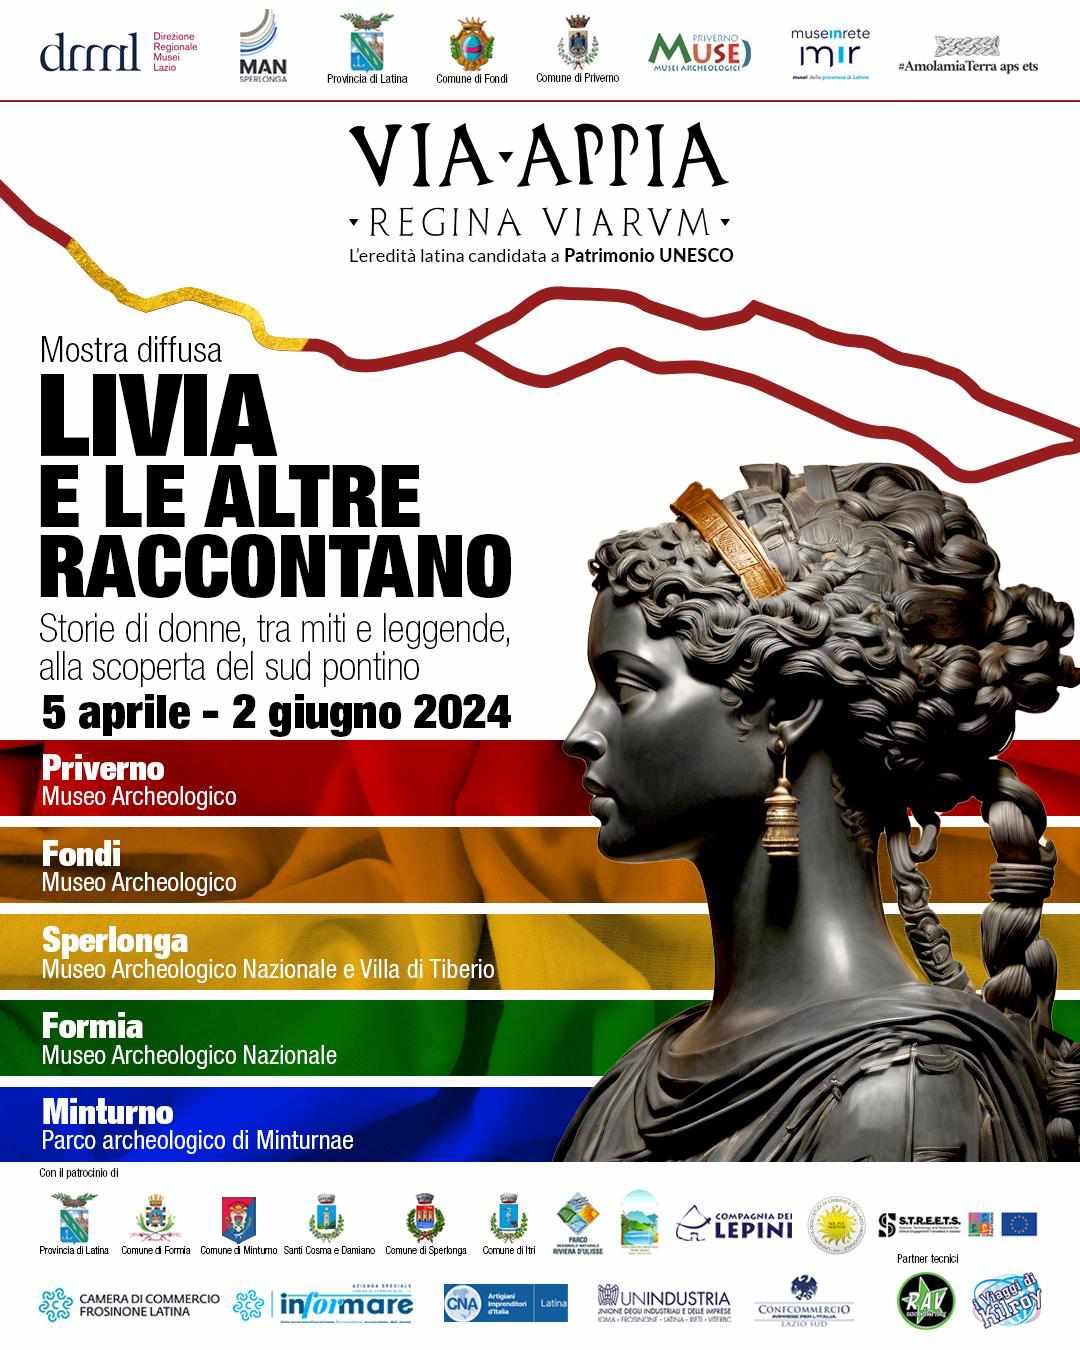 Mostra diffusa: Livia e le altre raccontano @ Priverno - Fondi - Sperlonga - Formia - Minturno